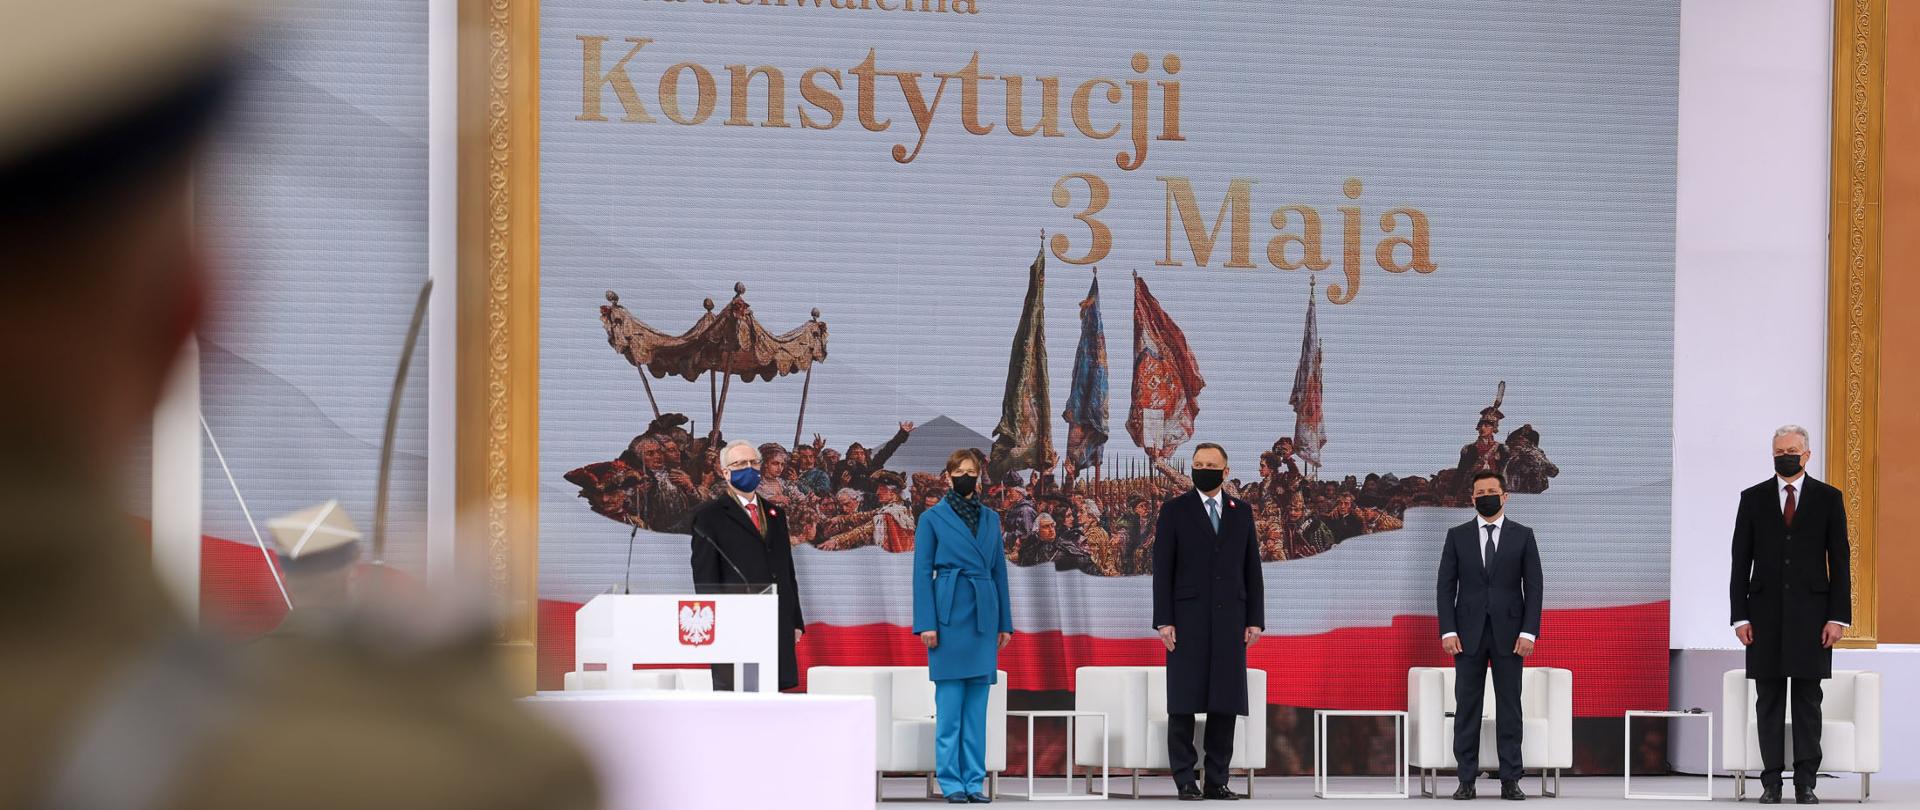 Na zdjęciu prezydenci Polski, Litwy, Łotwy, Estonii i Ukrainy stojący na scenie. W tle telebim przedstawiający fragment obrazu Jana Matejki oraz napis 230. rocznica uchwalenia Konstytucji 3 Maja. 